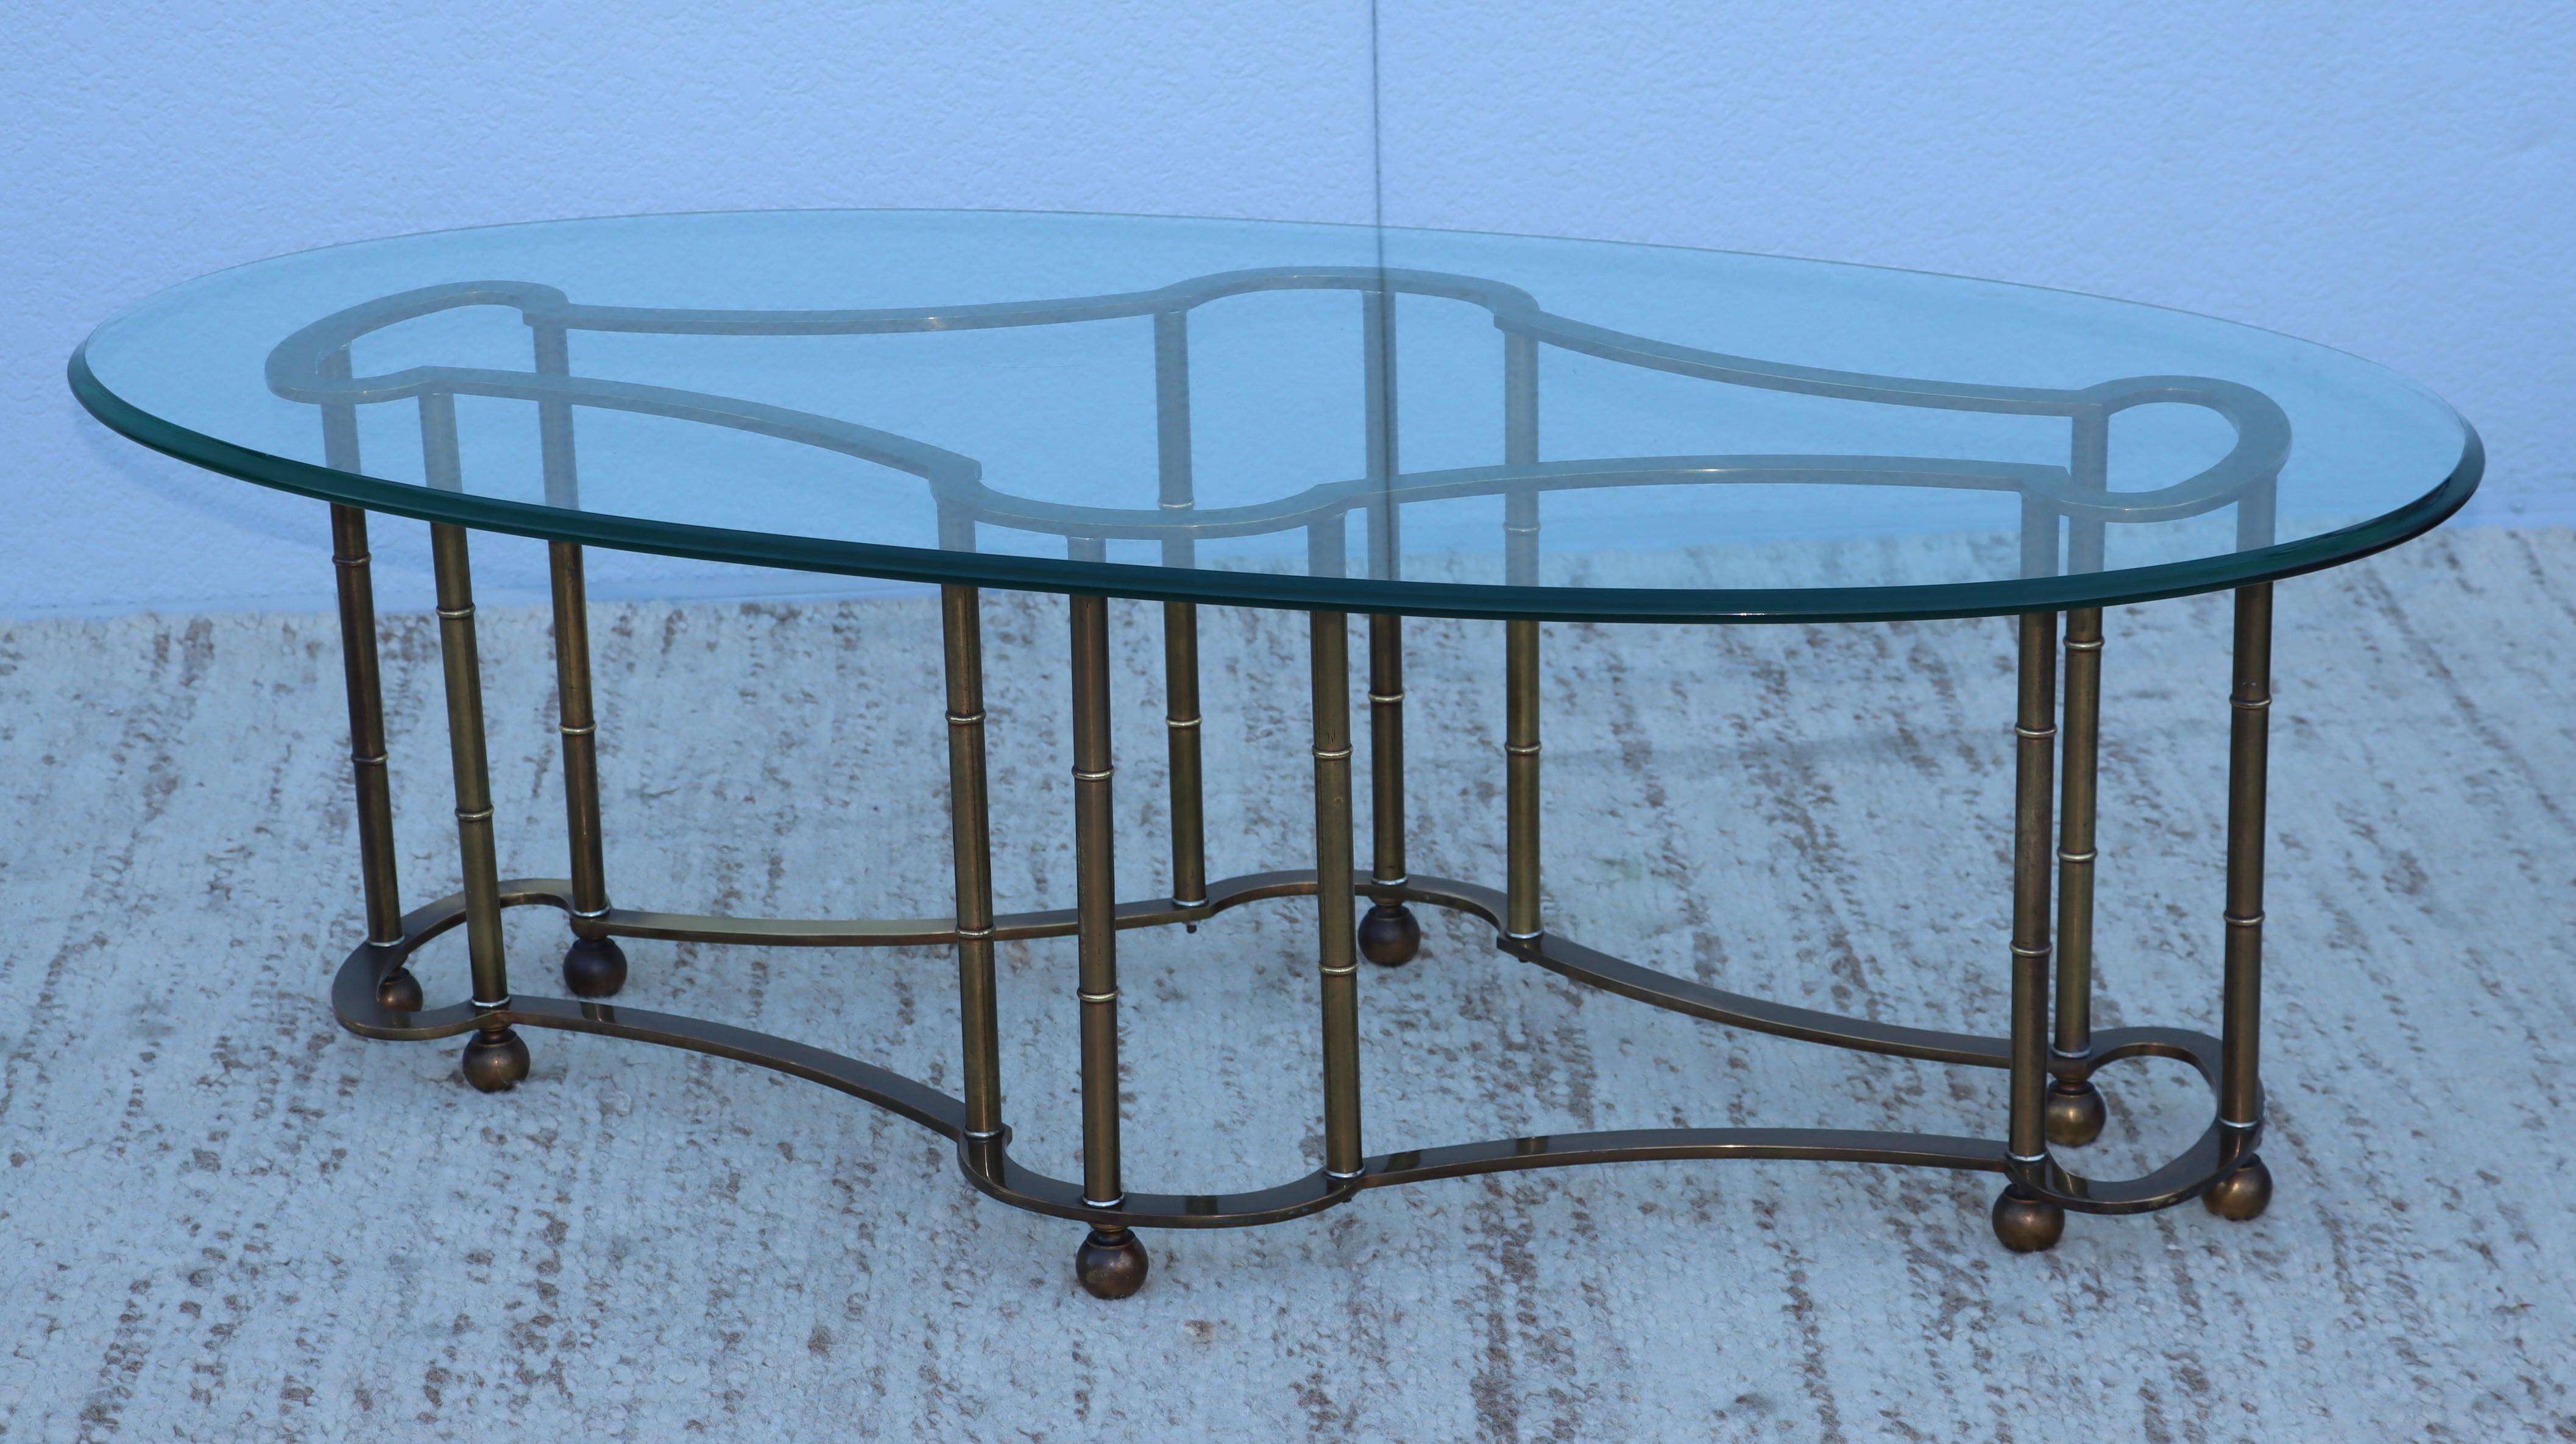 Table basse en laiton avec plateau en verre ovale de Mastercraft, des années 1970, en état d'origine vintage, avec une certaine usure et patine du laiton due à l'âge et à l'utilisation et quelques rayures sur le verre.